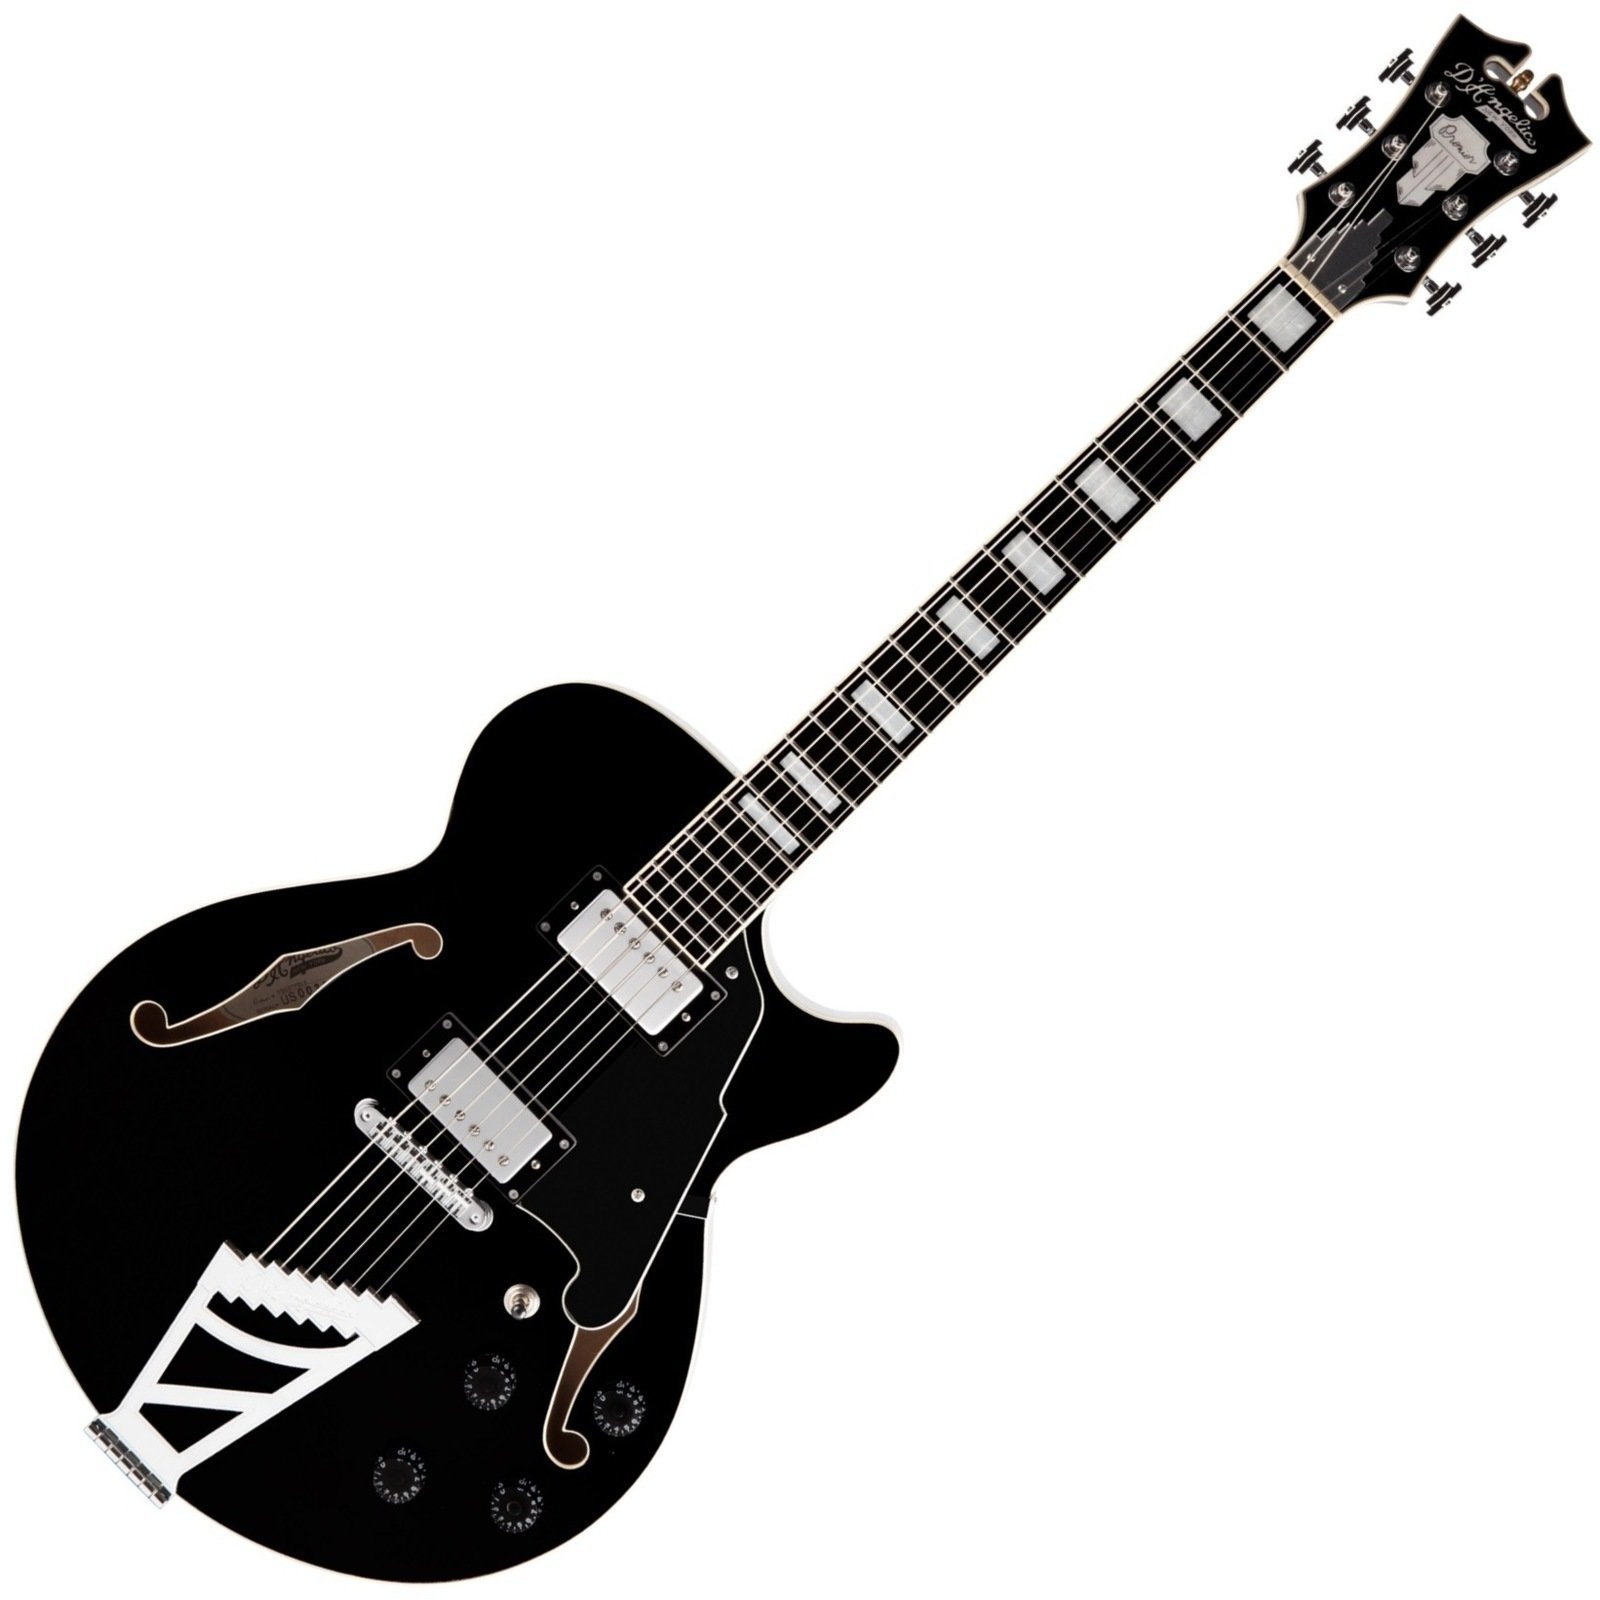 Semiakustická kytara D'Angelico Premier SS Stairstep Černá